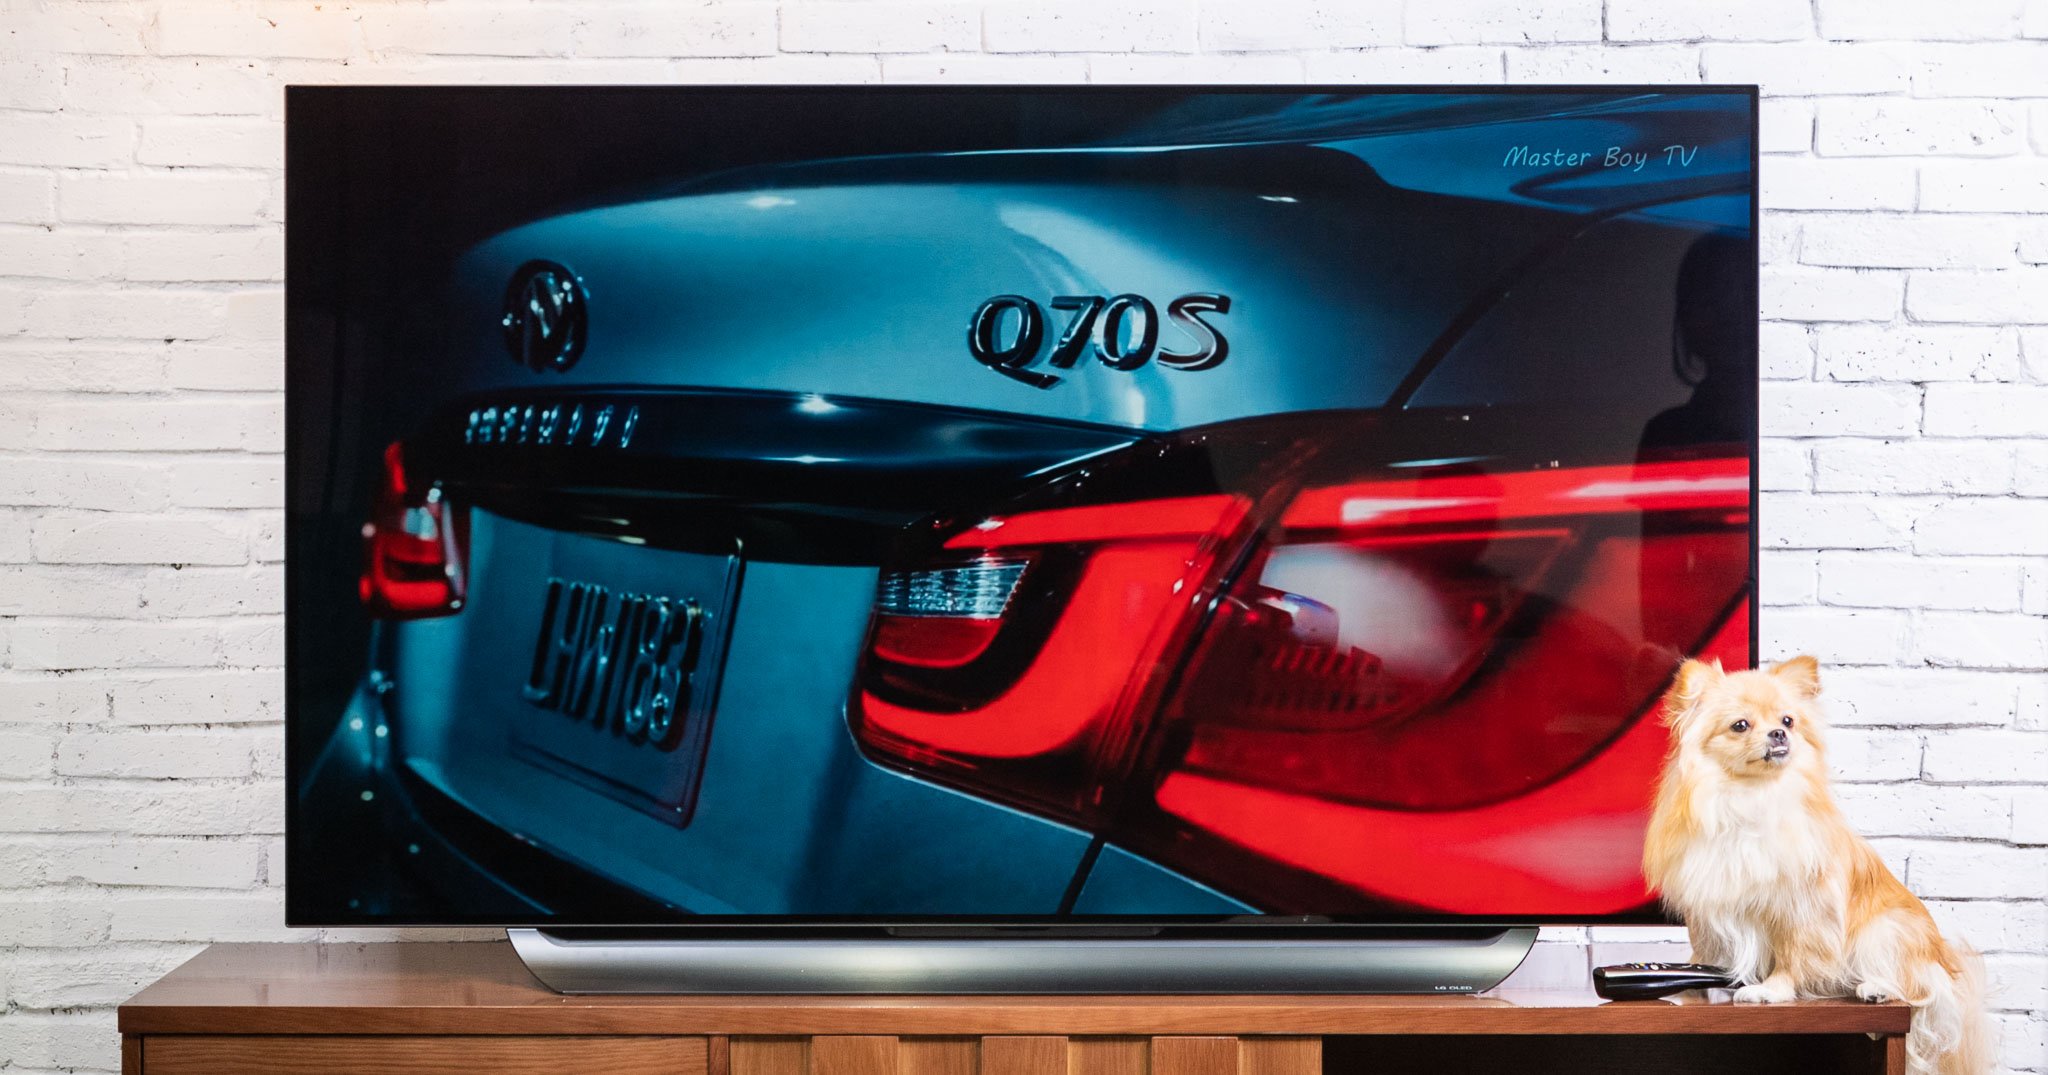 Trên tay TV OLED LG C8: Bạn không cần phải chọn dòng đắt nhất để có chất lượng hình ảnh tốt nhất